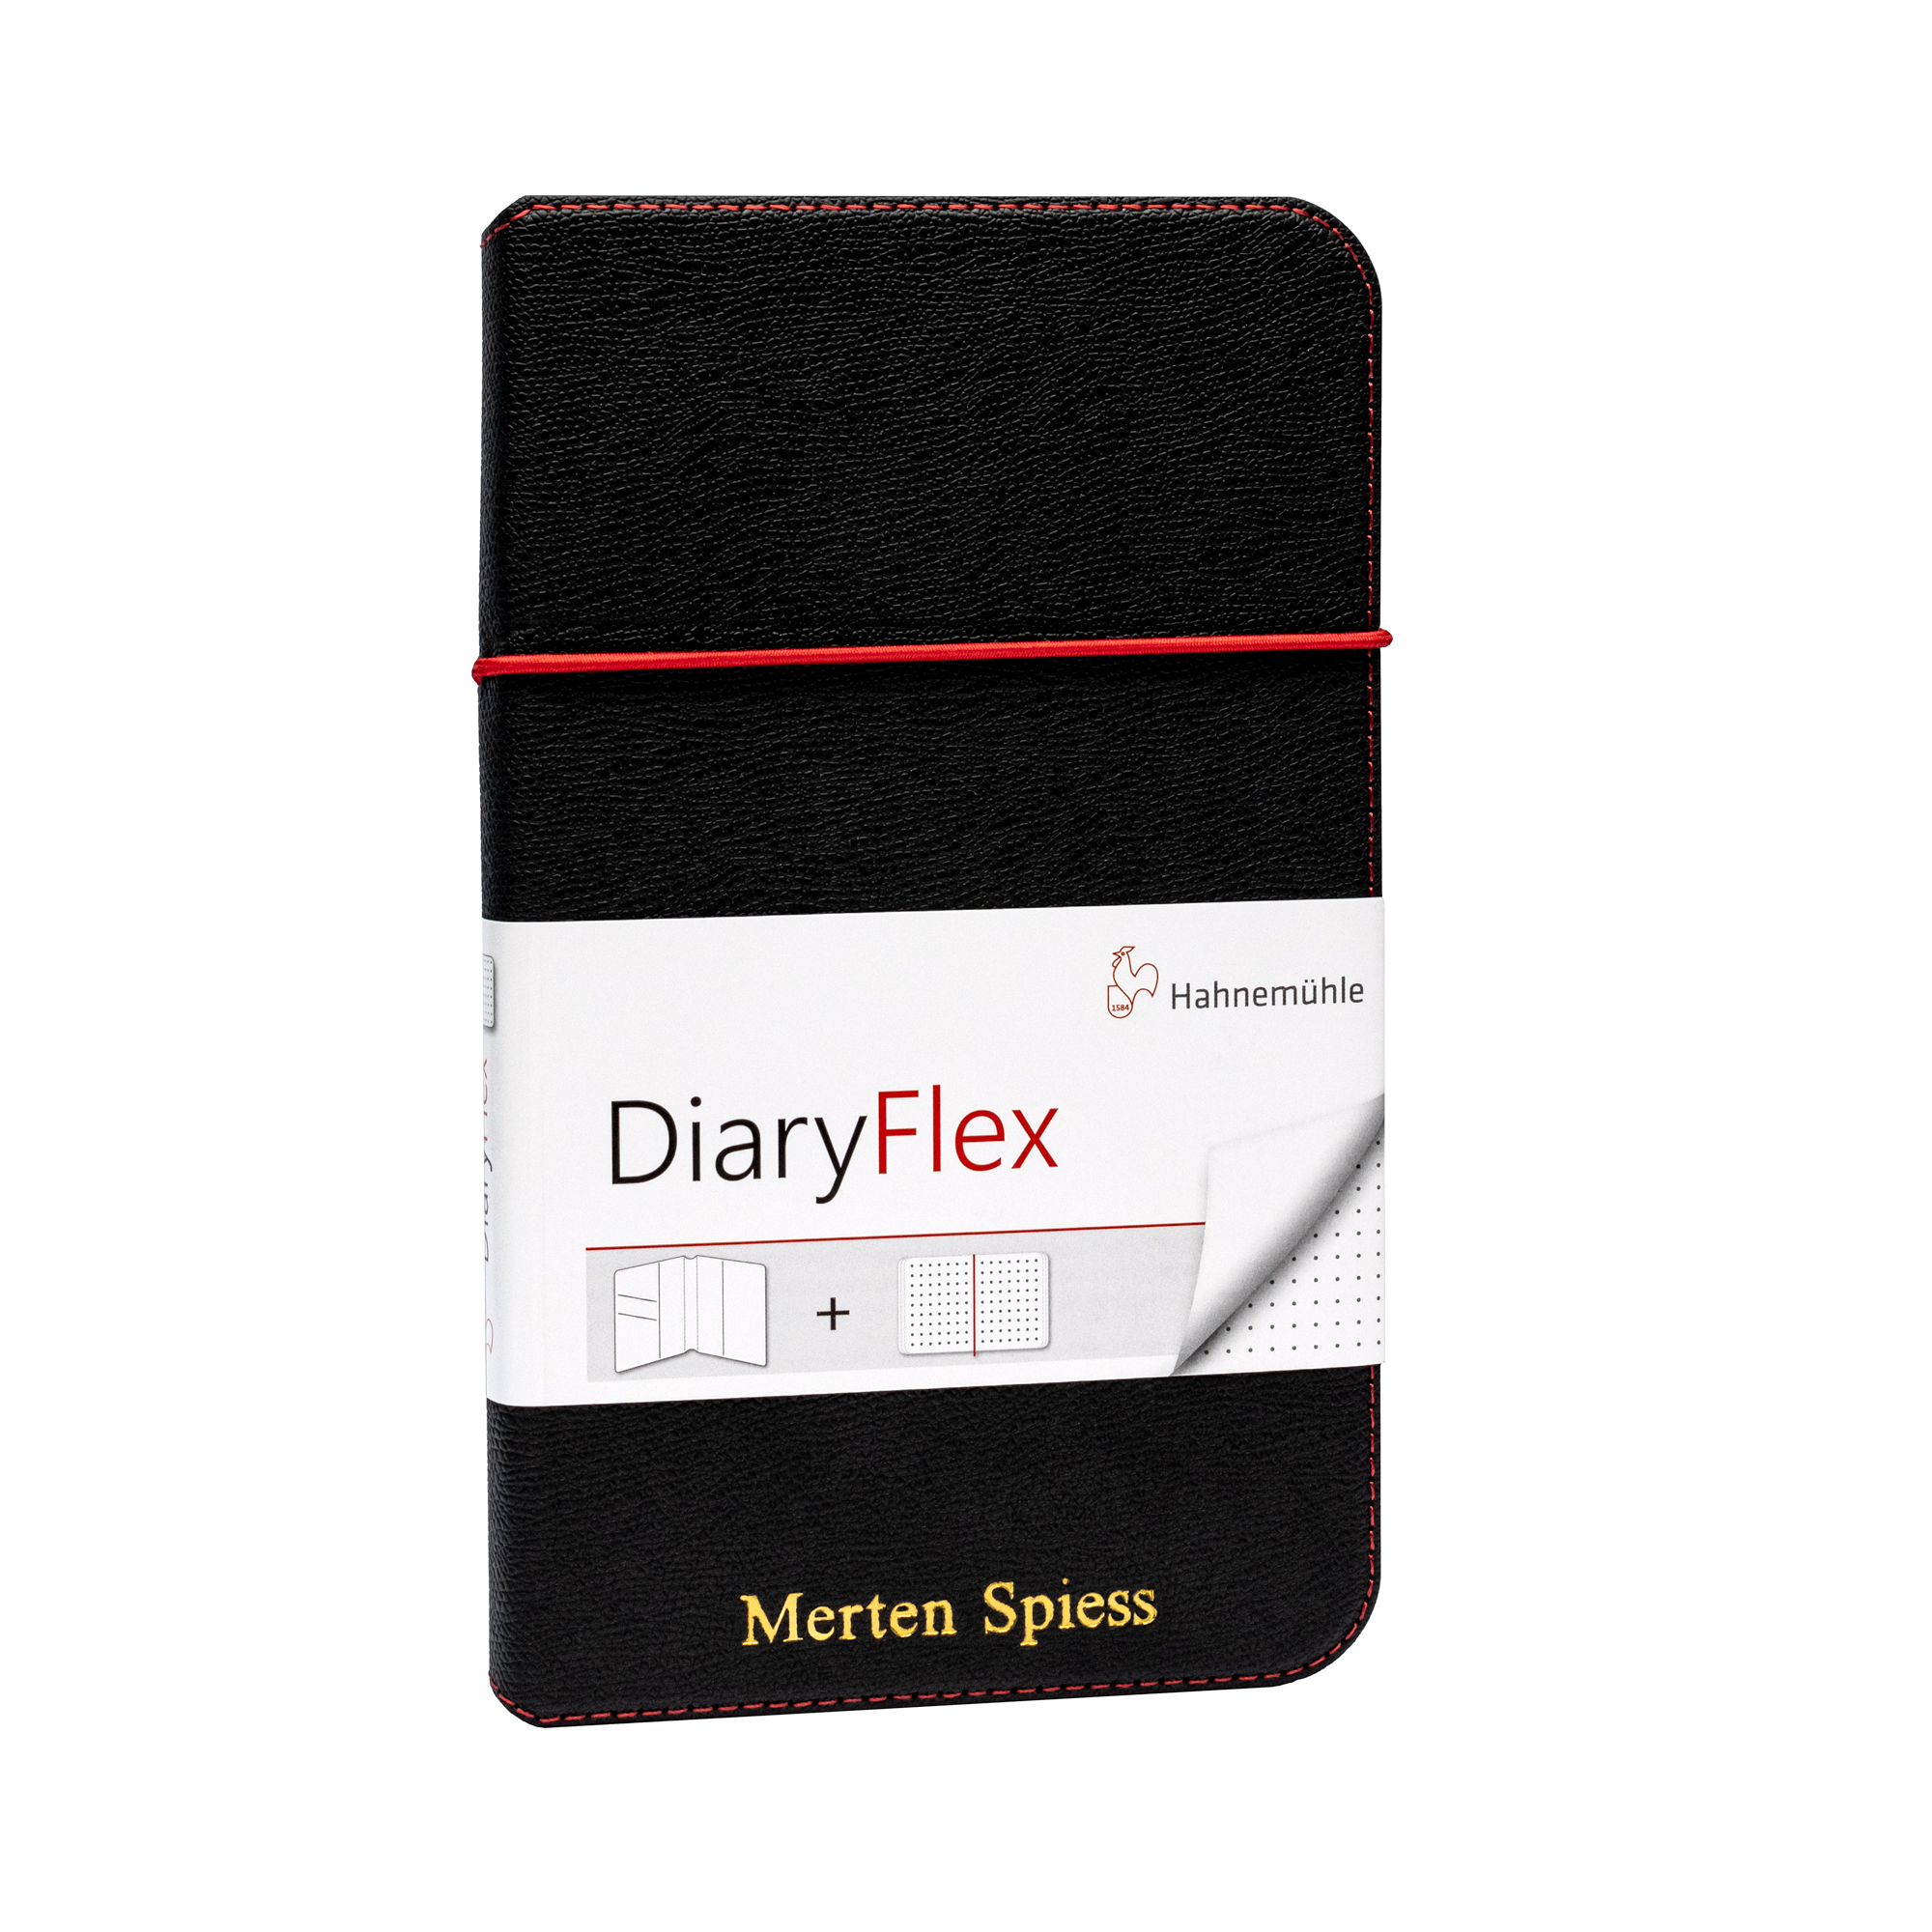 DiaryFlex - personalized